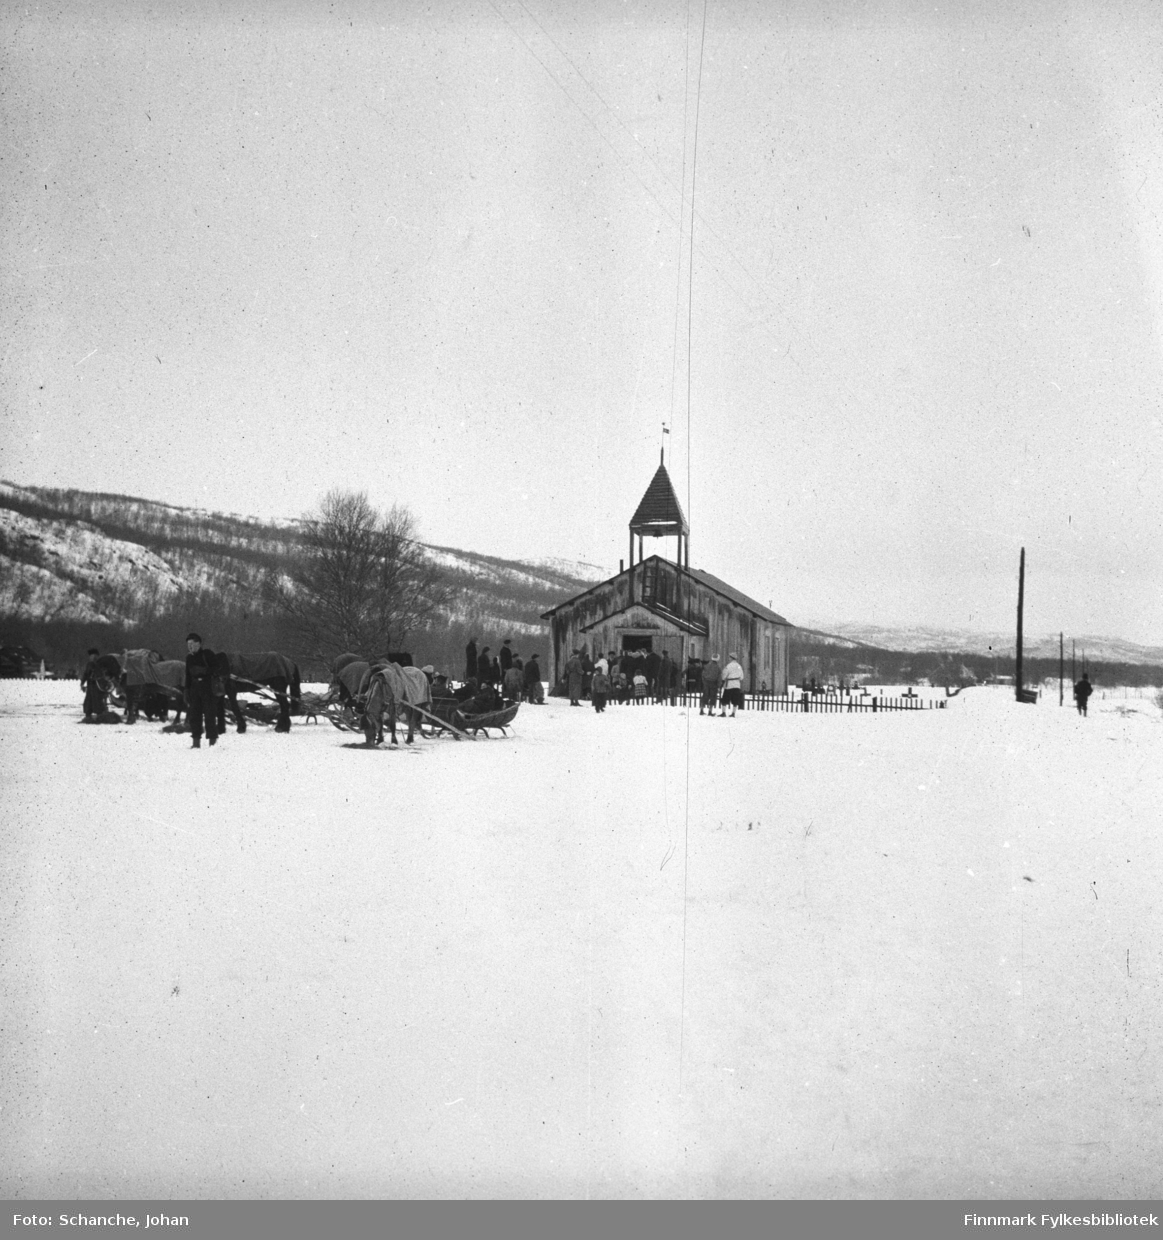 Polmak kirke fotografert på påsken -46. Utenfor kirken står hester med sleder. Folk er på veg til kirken. Bildet er tatt fra lang avstand.